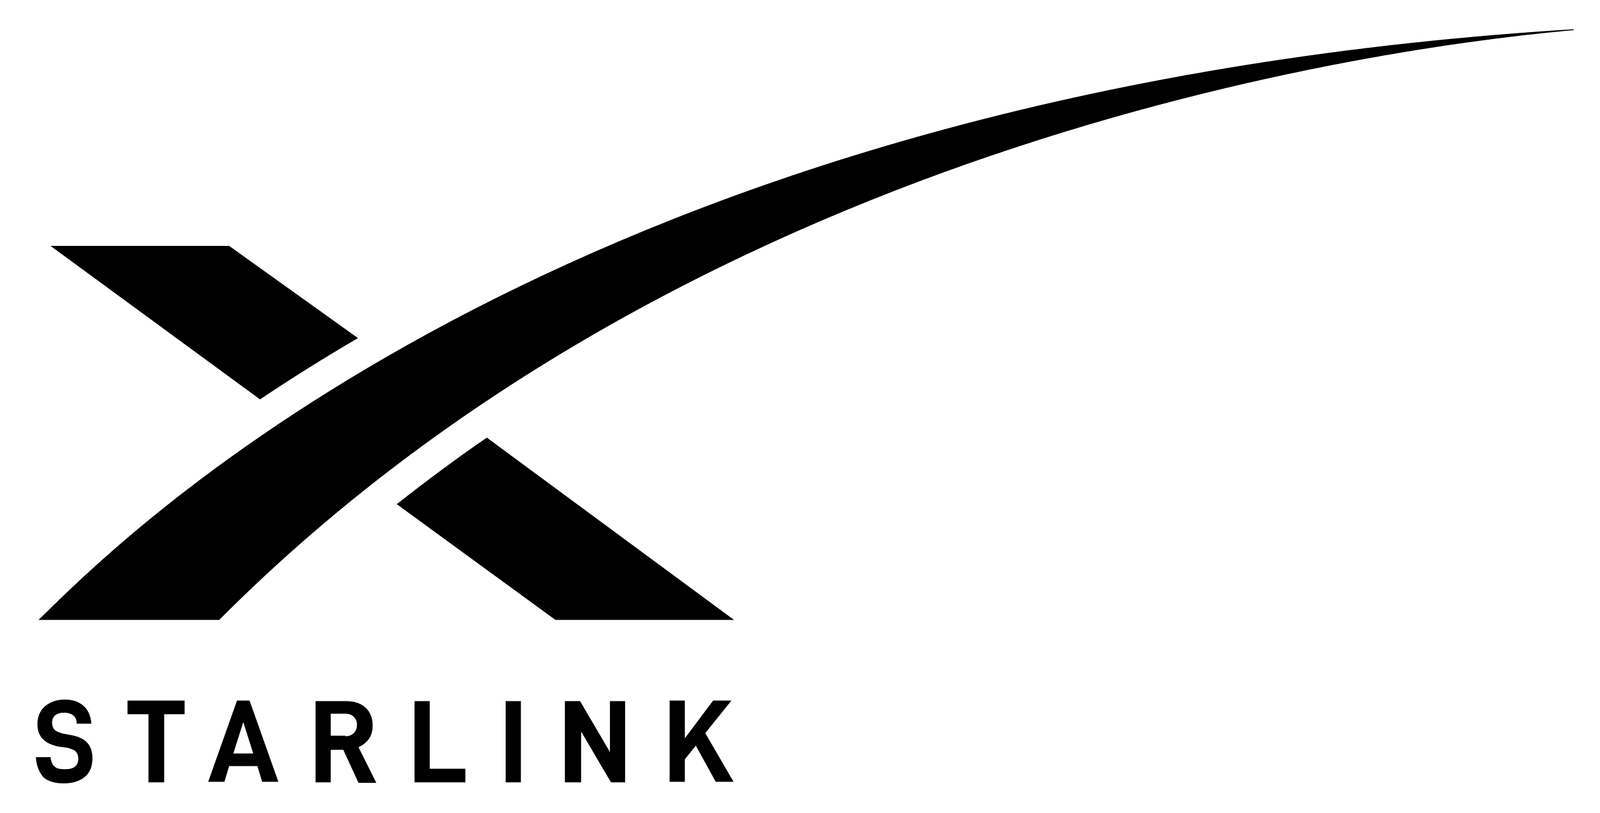 Starlink_Logo